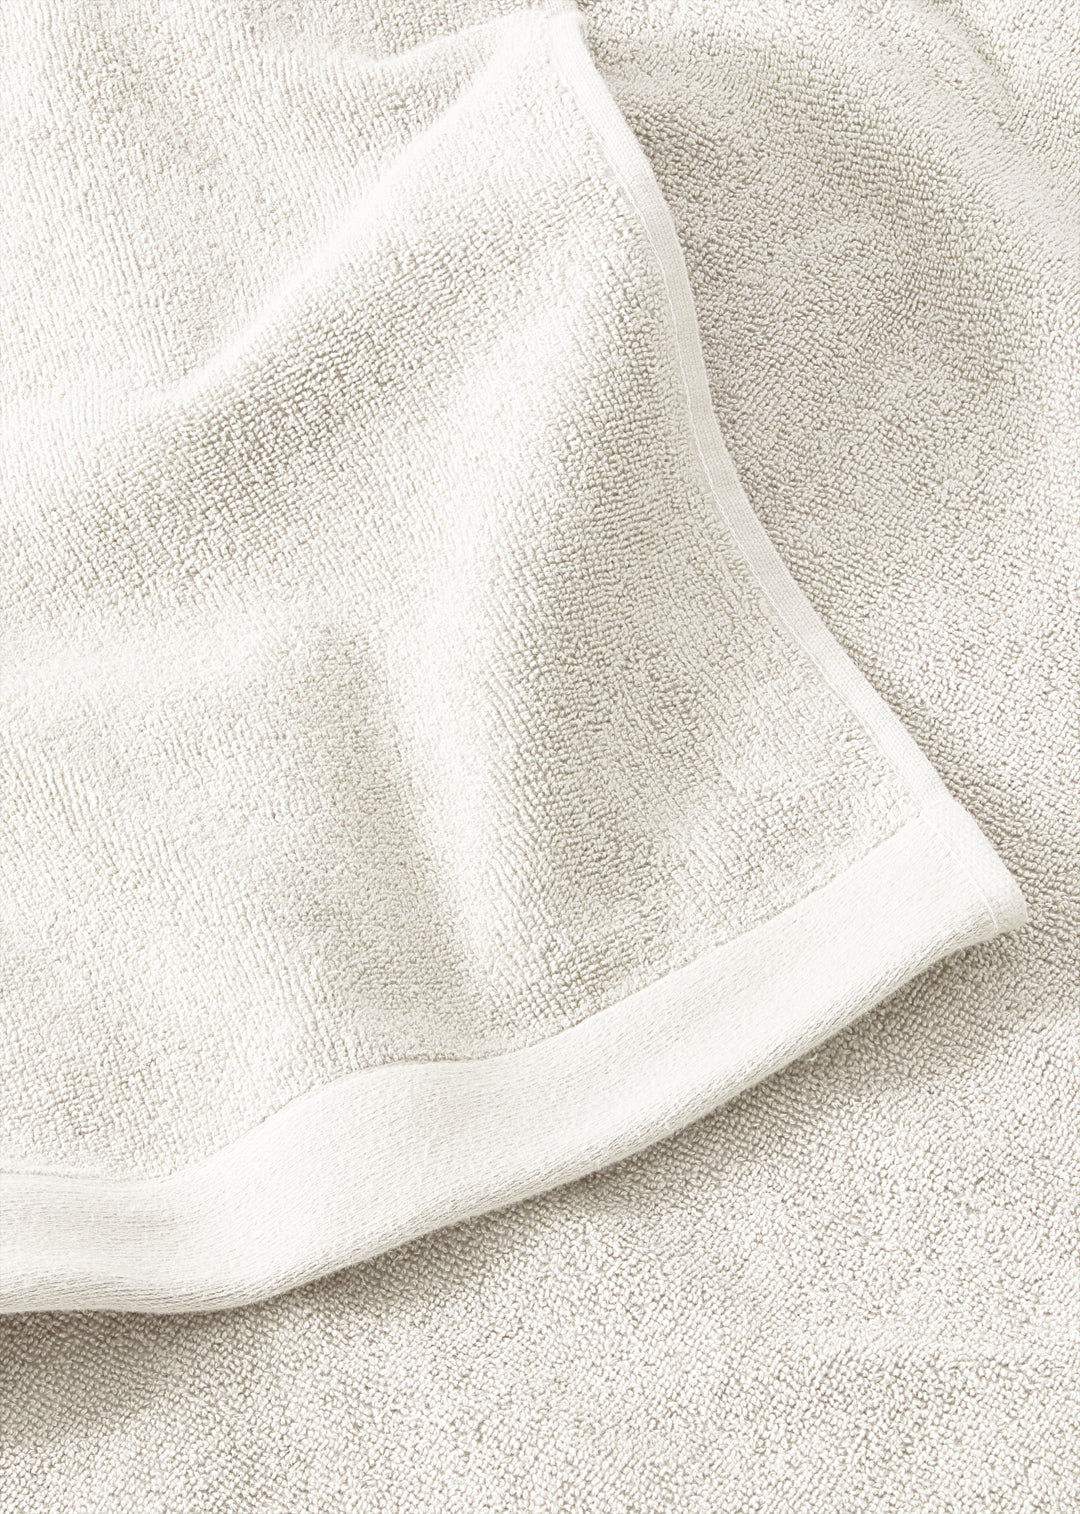 Handtuch Baumwolle Weiß 100 x 150 cm